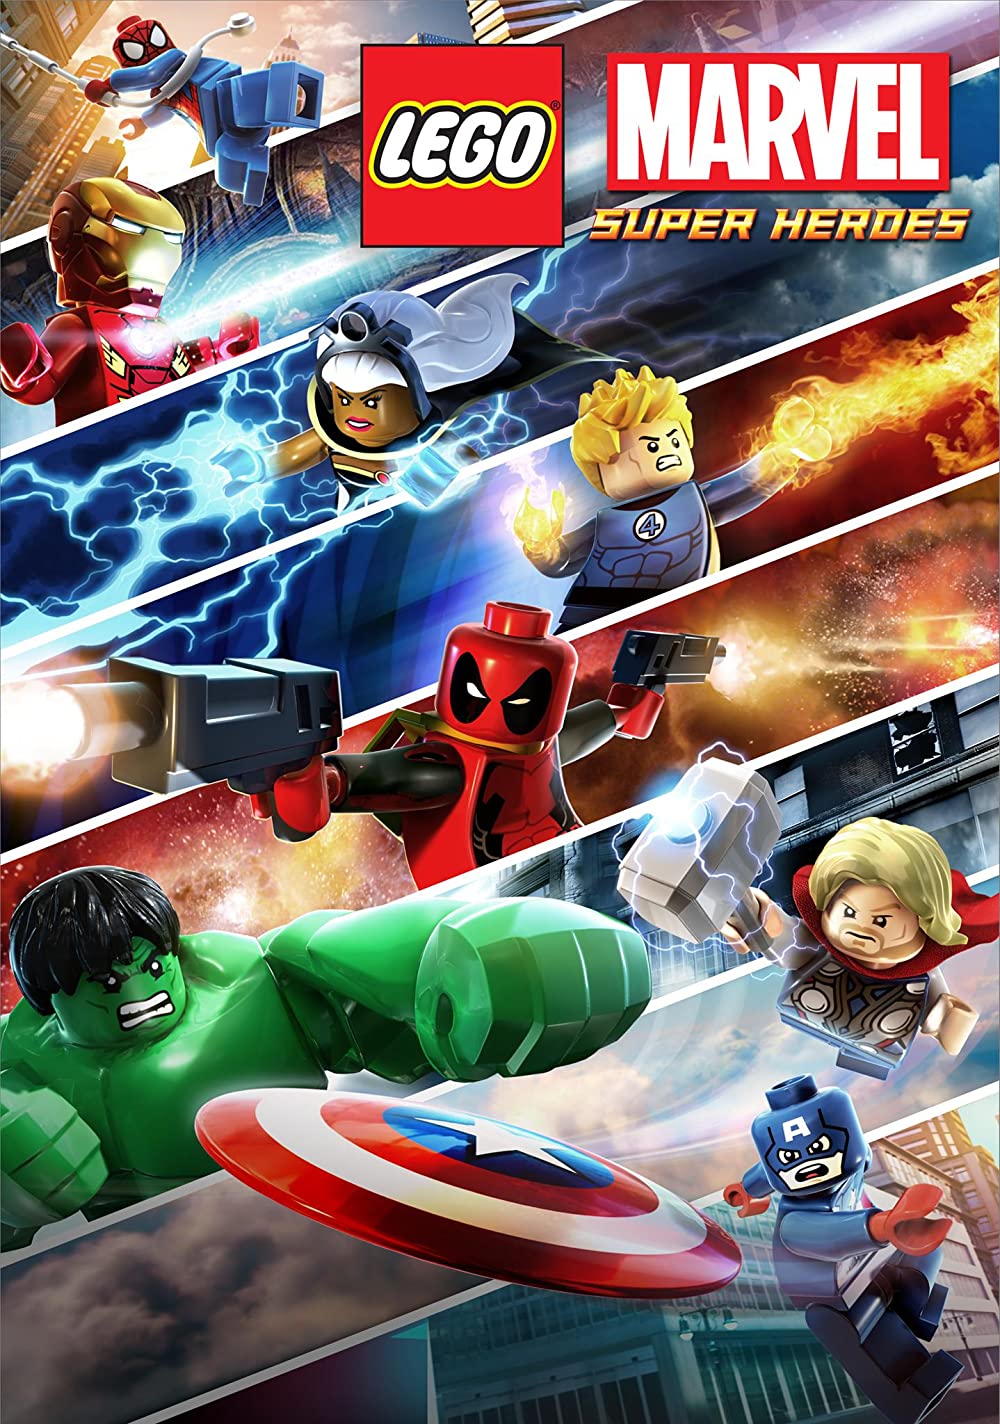 Lego Marvel Super Heroes: Maximum Overload (TV Mini Series 2013)